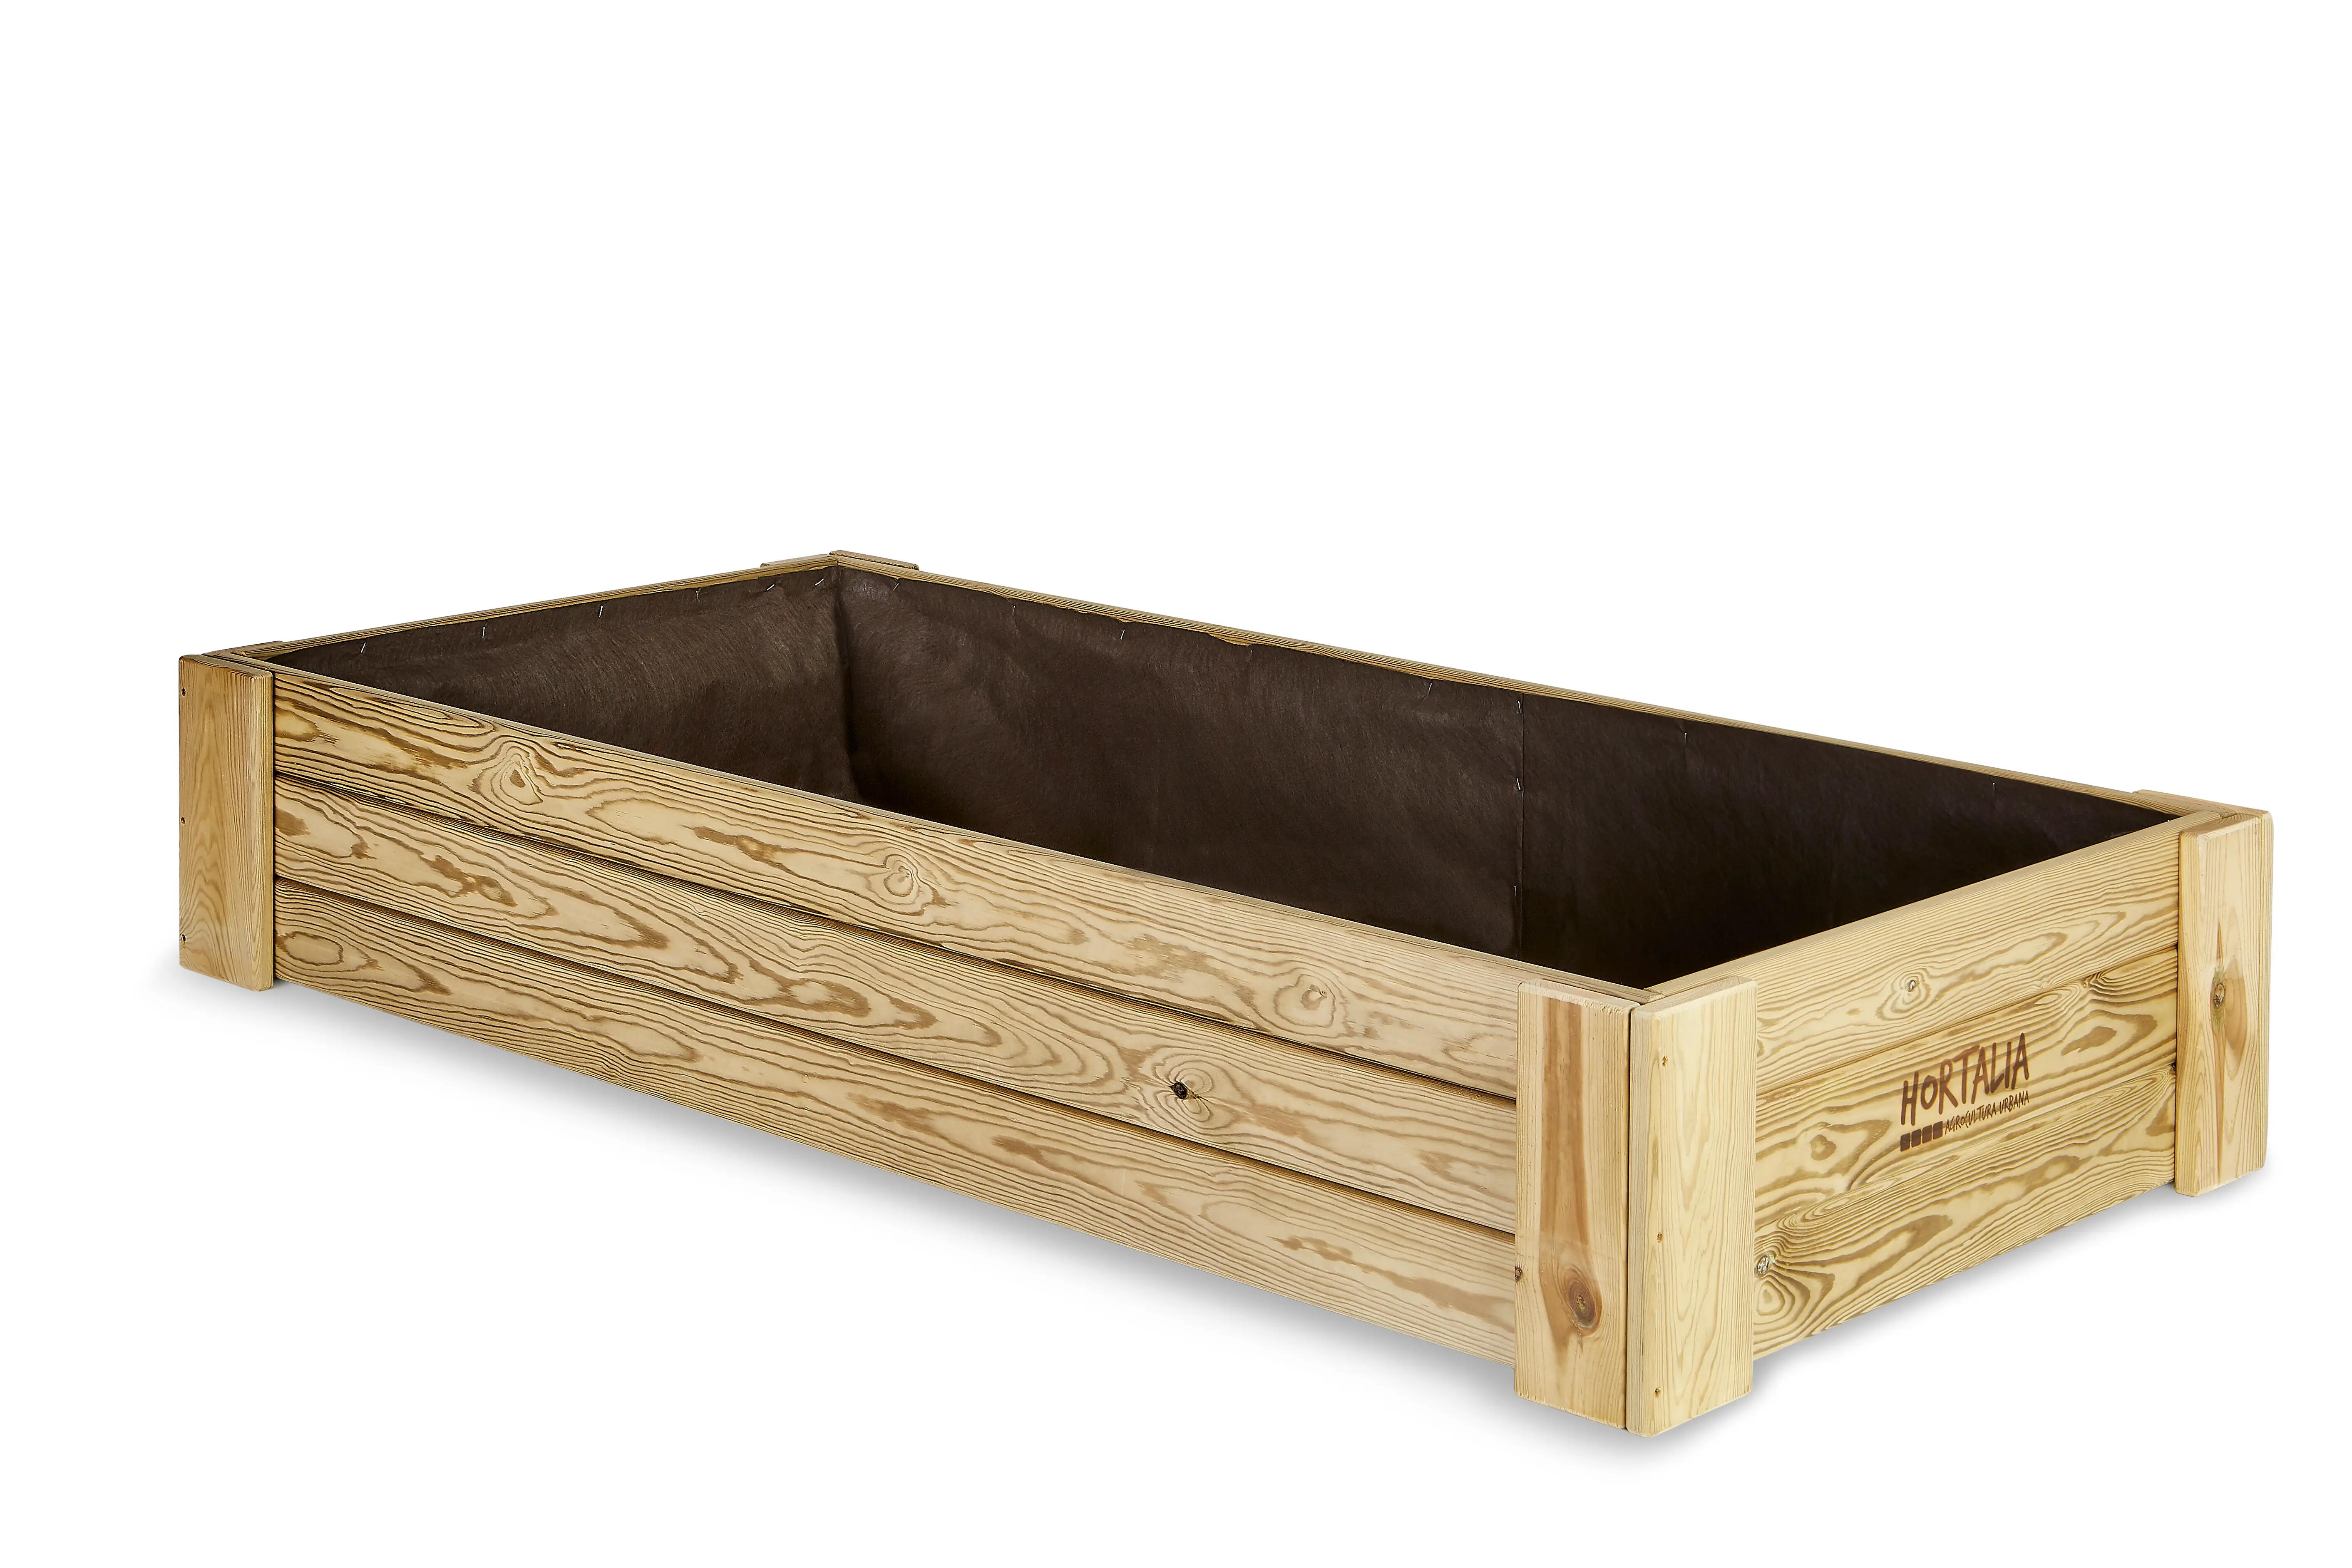 Cajón de cultivo de suelo box xl30 de hortalia